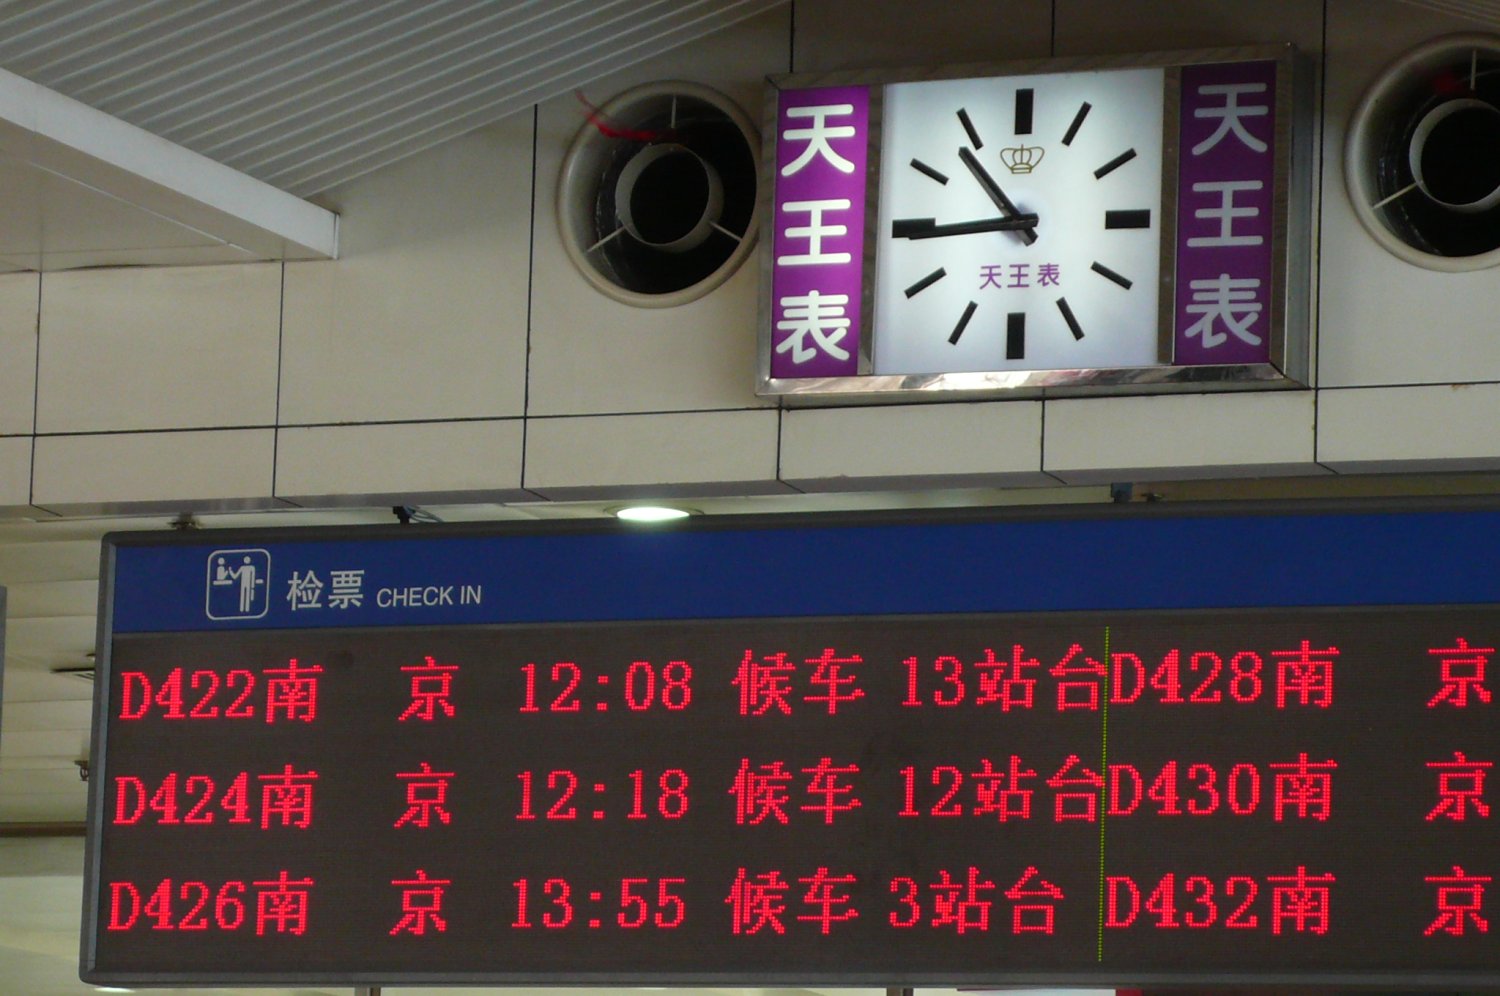 上海駅待合室の電光掲示板